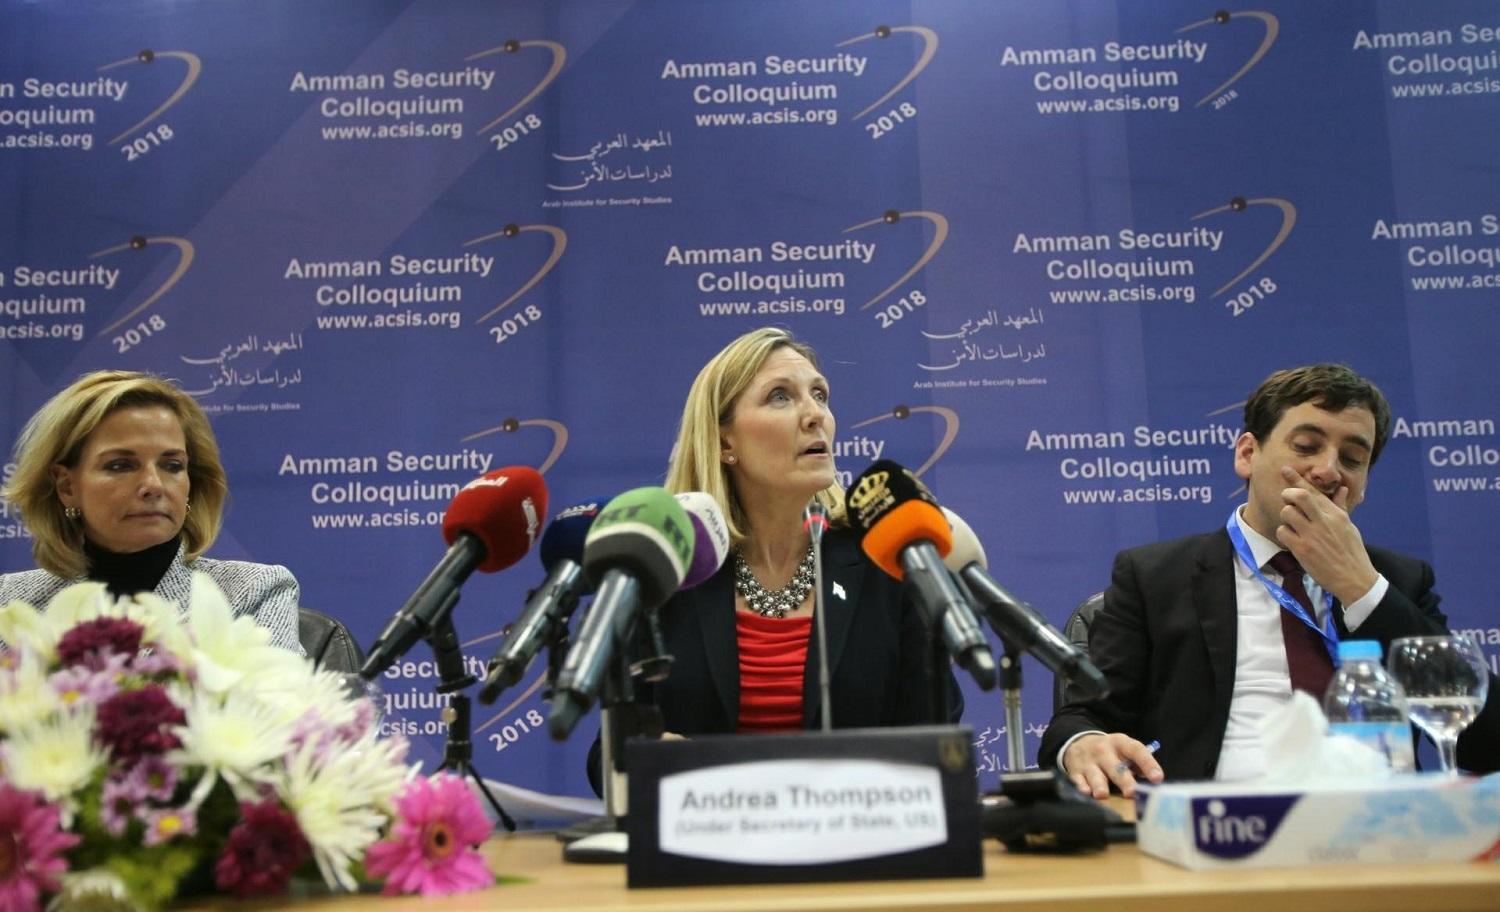 اندريا توميسون، نائب وزير الخارجية الأميركي تتوسط إحدى جلسات منتدى عمان الأمني. صلاح ملكاوي/ المملكة